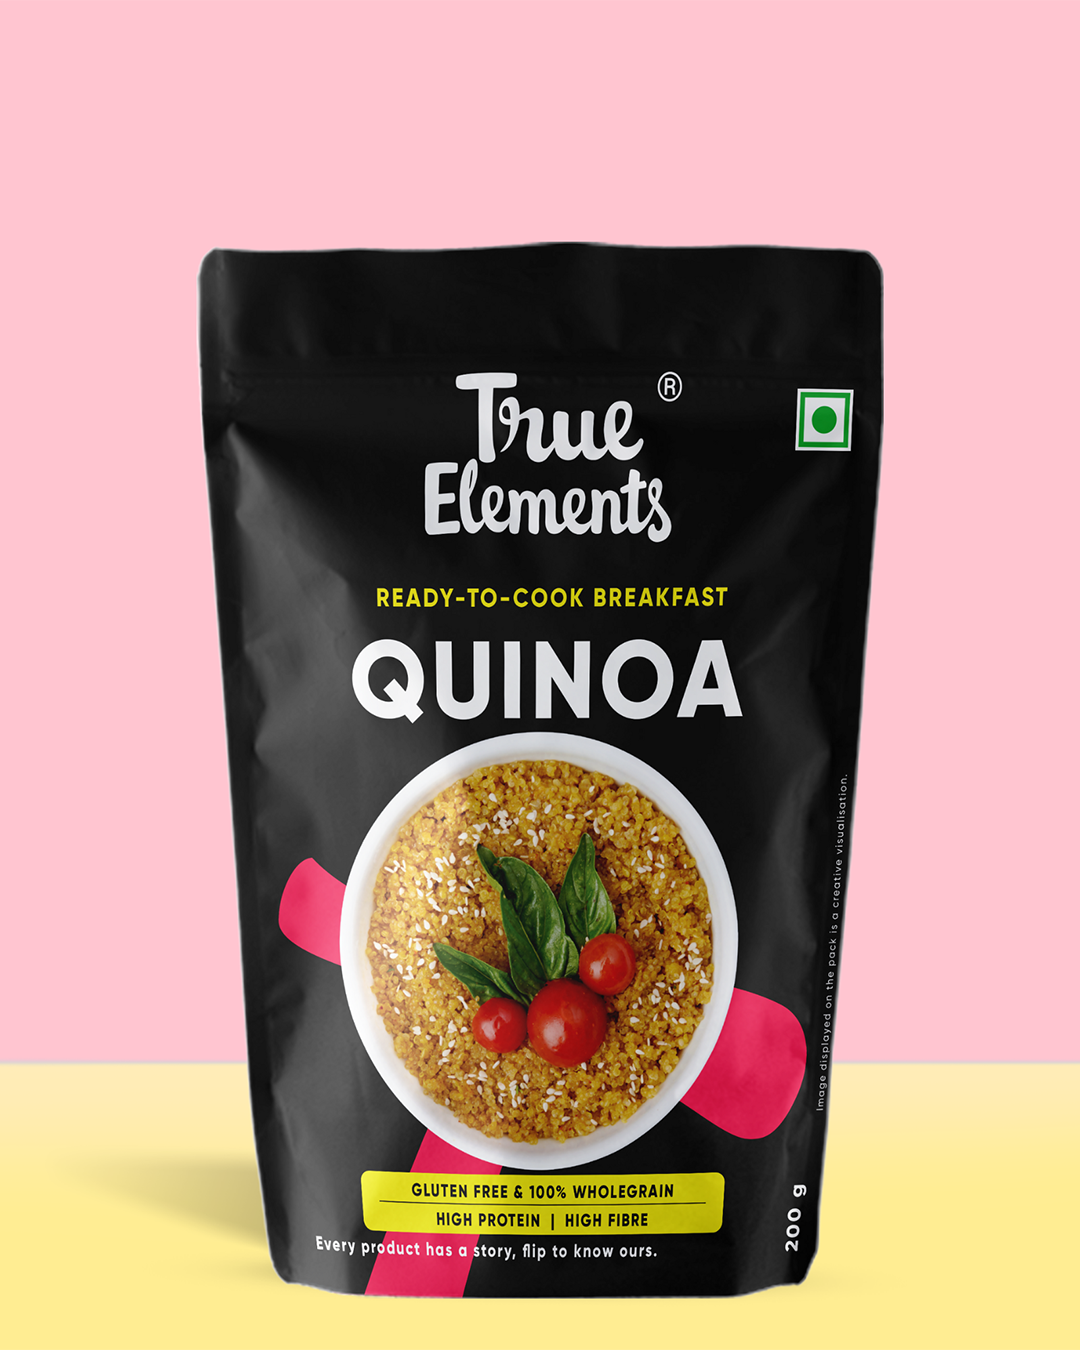 True elements Quinoa 200g Pouch (Premium Whole Seeds)